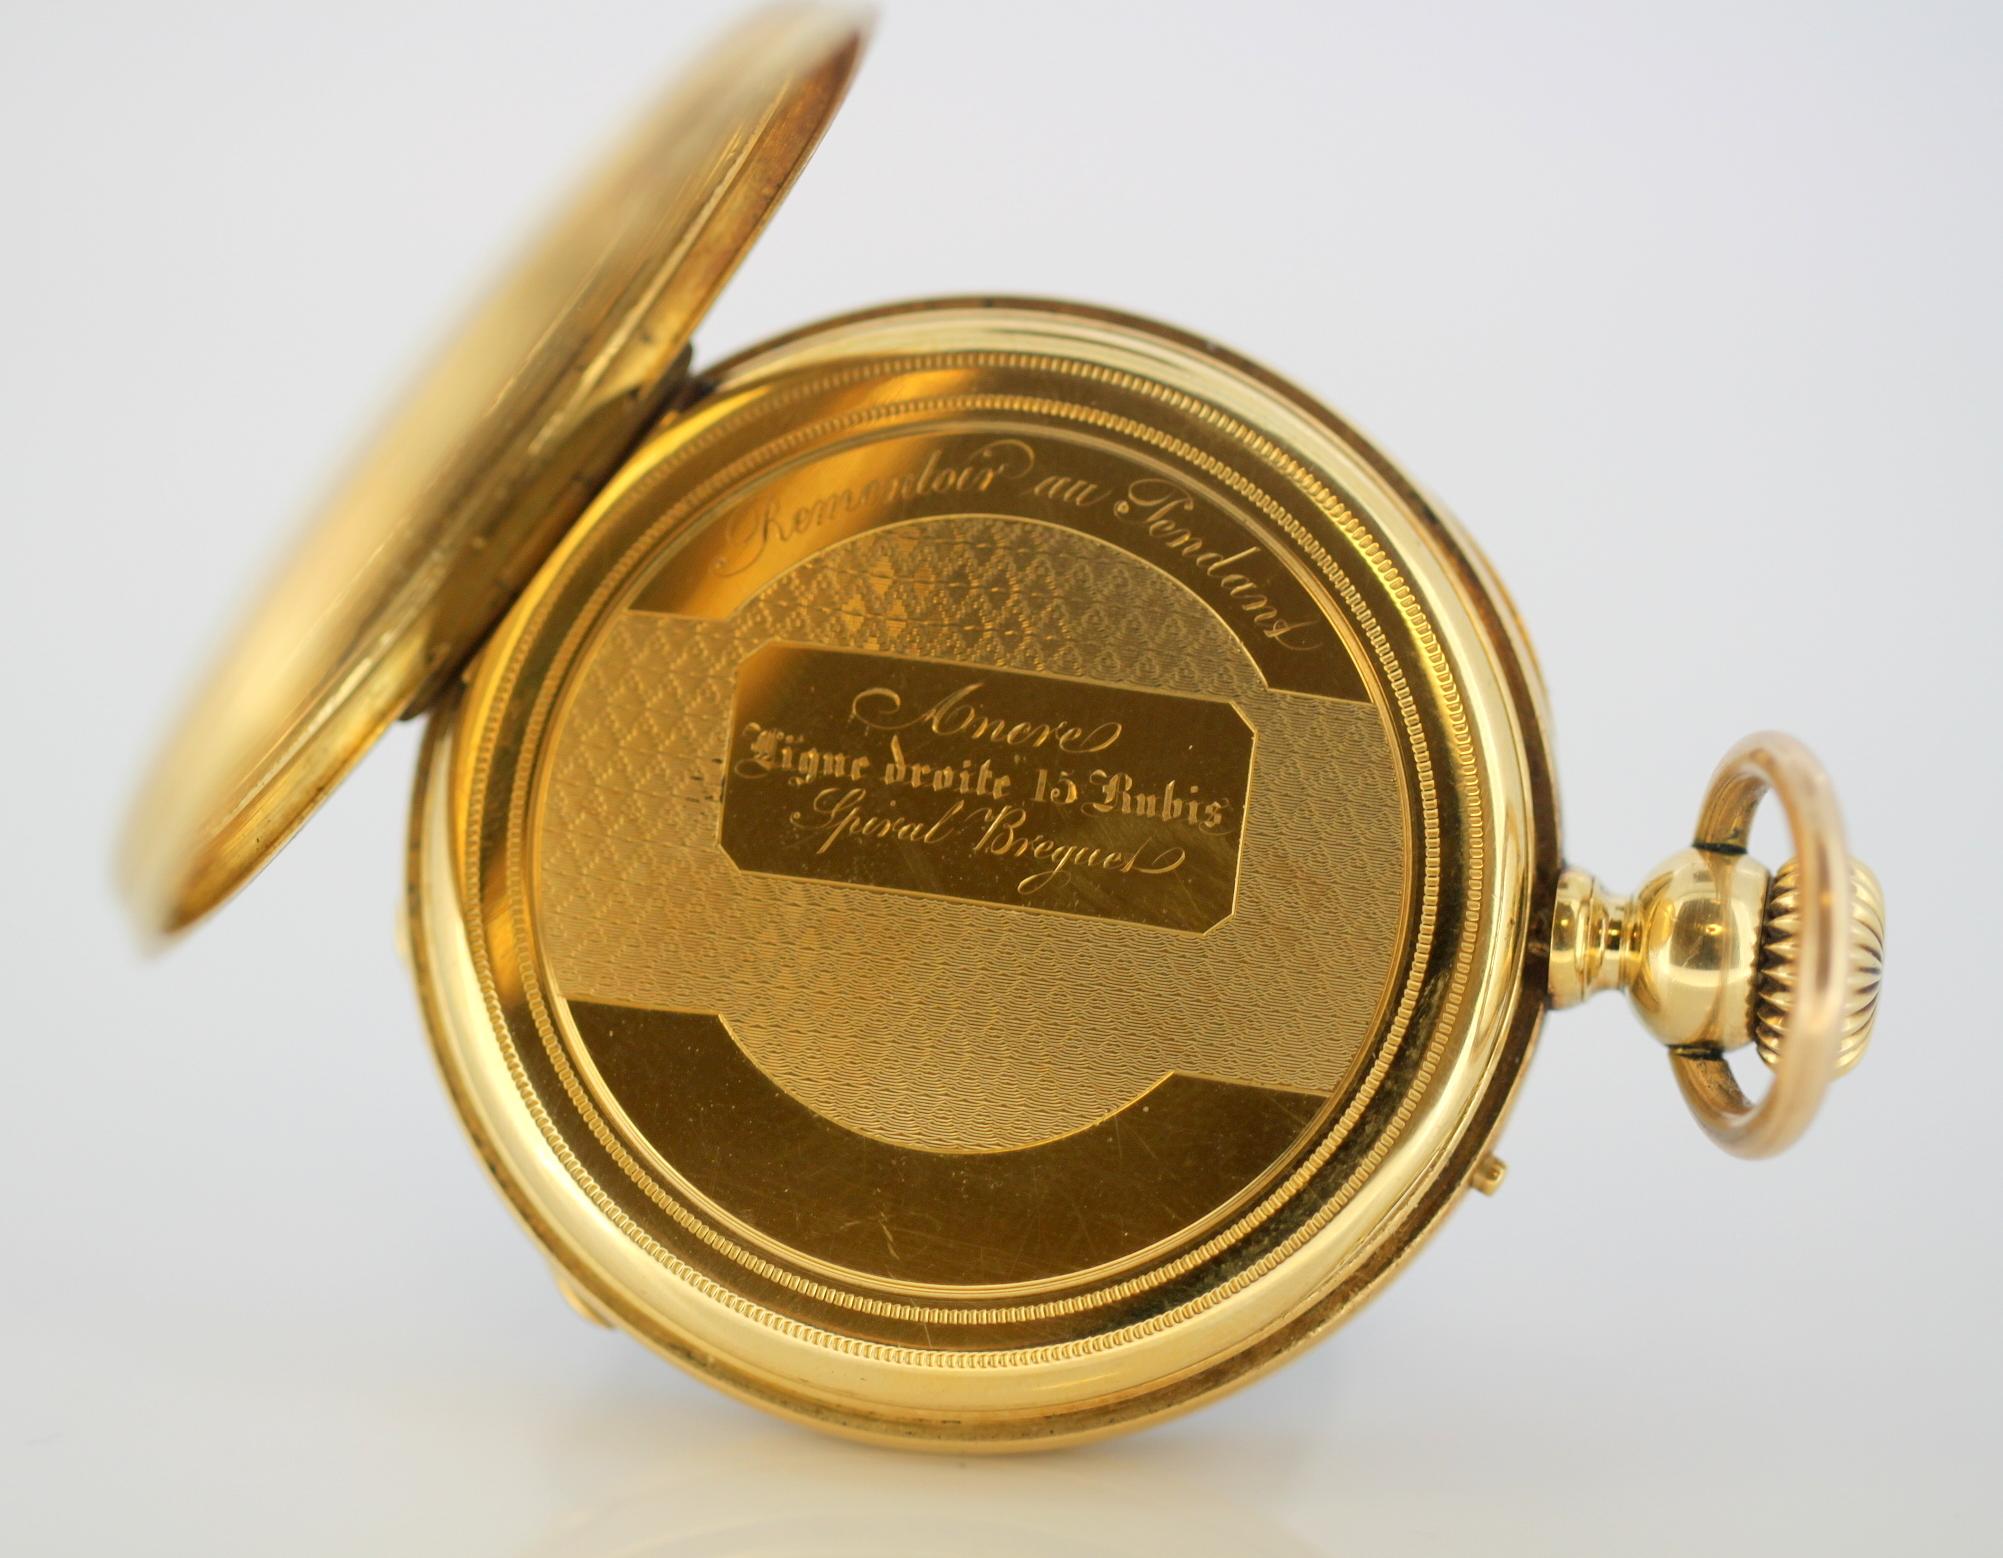 Antique Swiss 18 Karat Yellow Gold Pocket Watch by Amore Spiral Breguet, 1920s 6